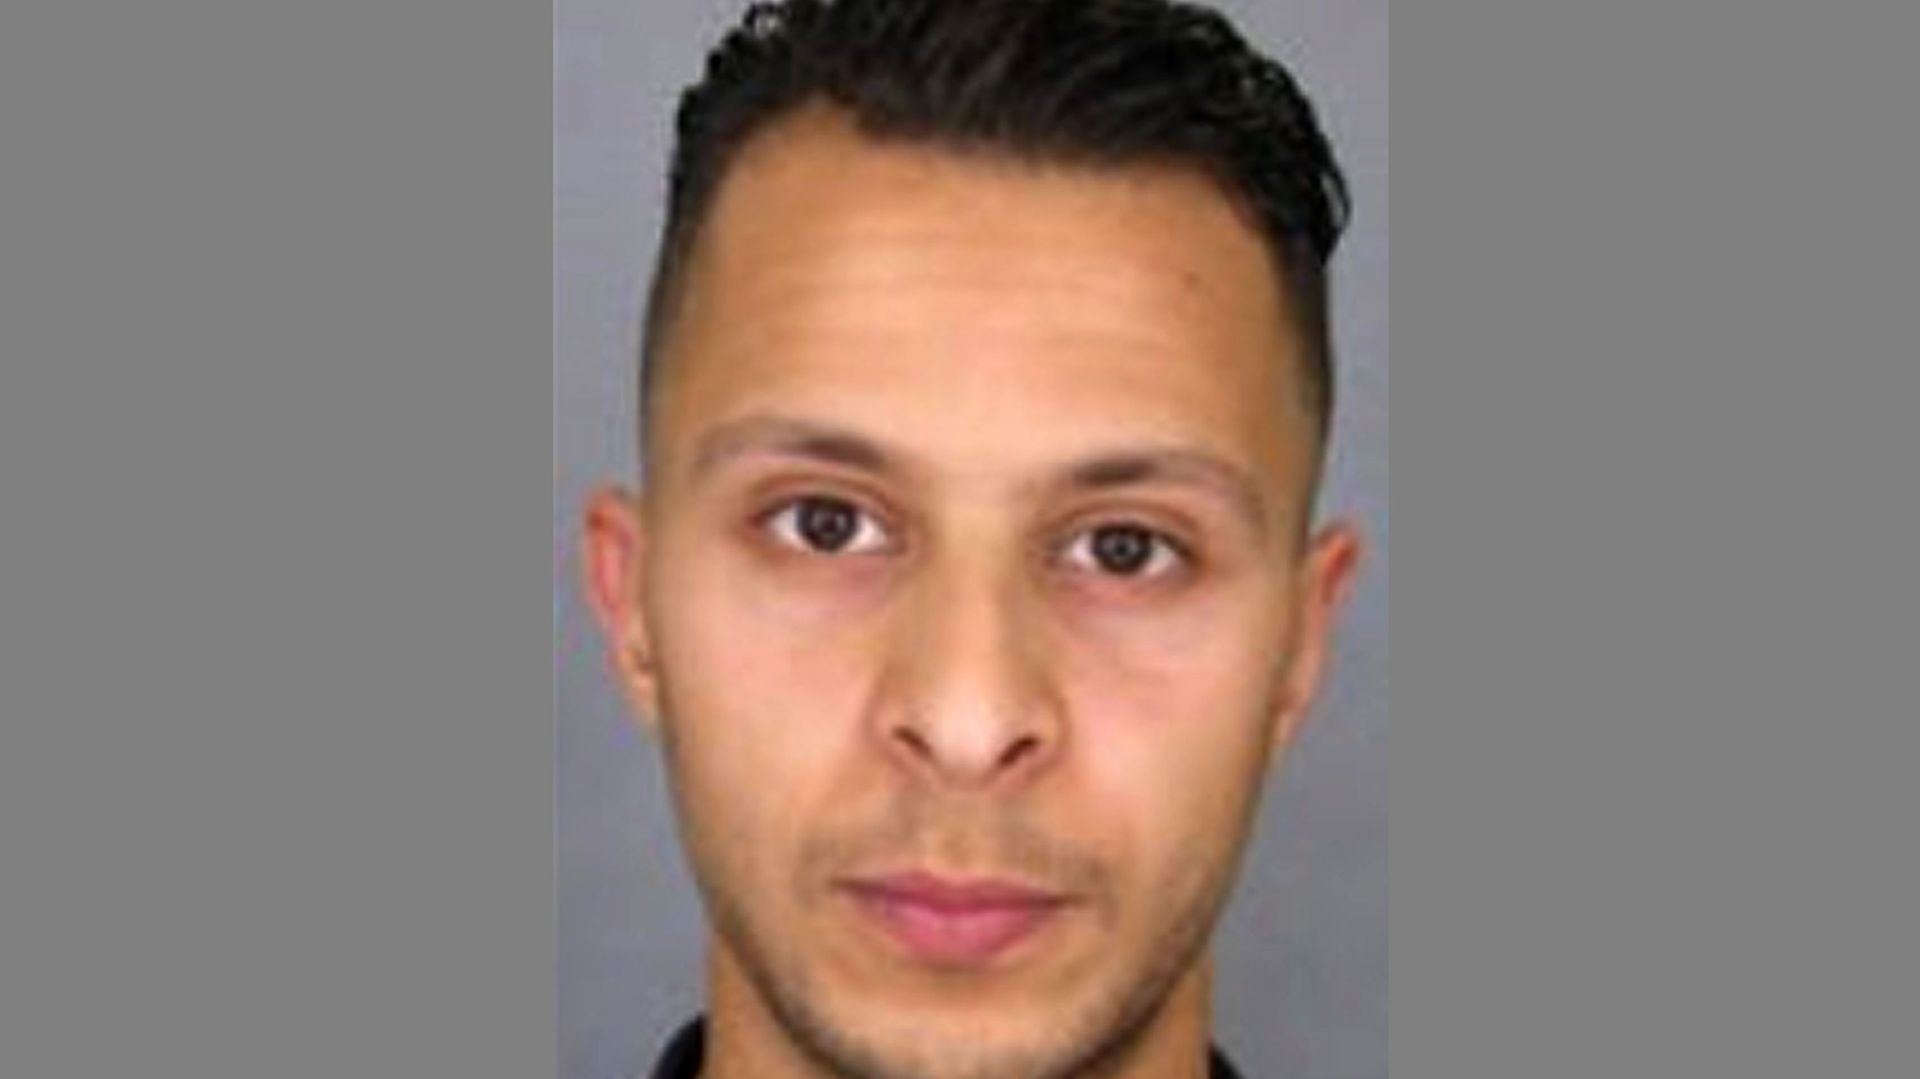 Salah Abdeslam, Français de 26 ans résidant en Belgique, est recherché comme étant l'un des assaillants des attaques du 13 novembre à Paris.